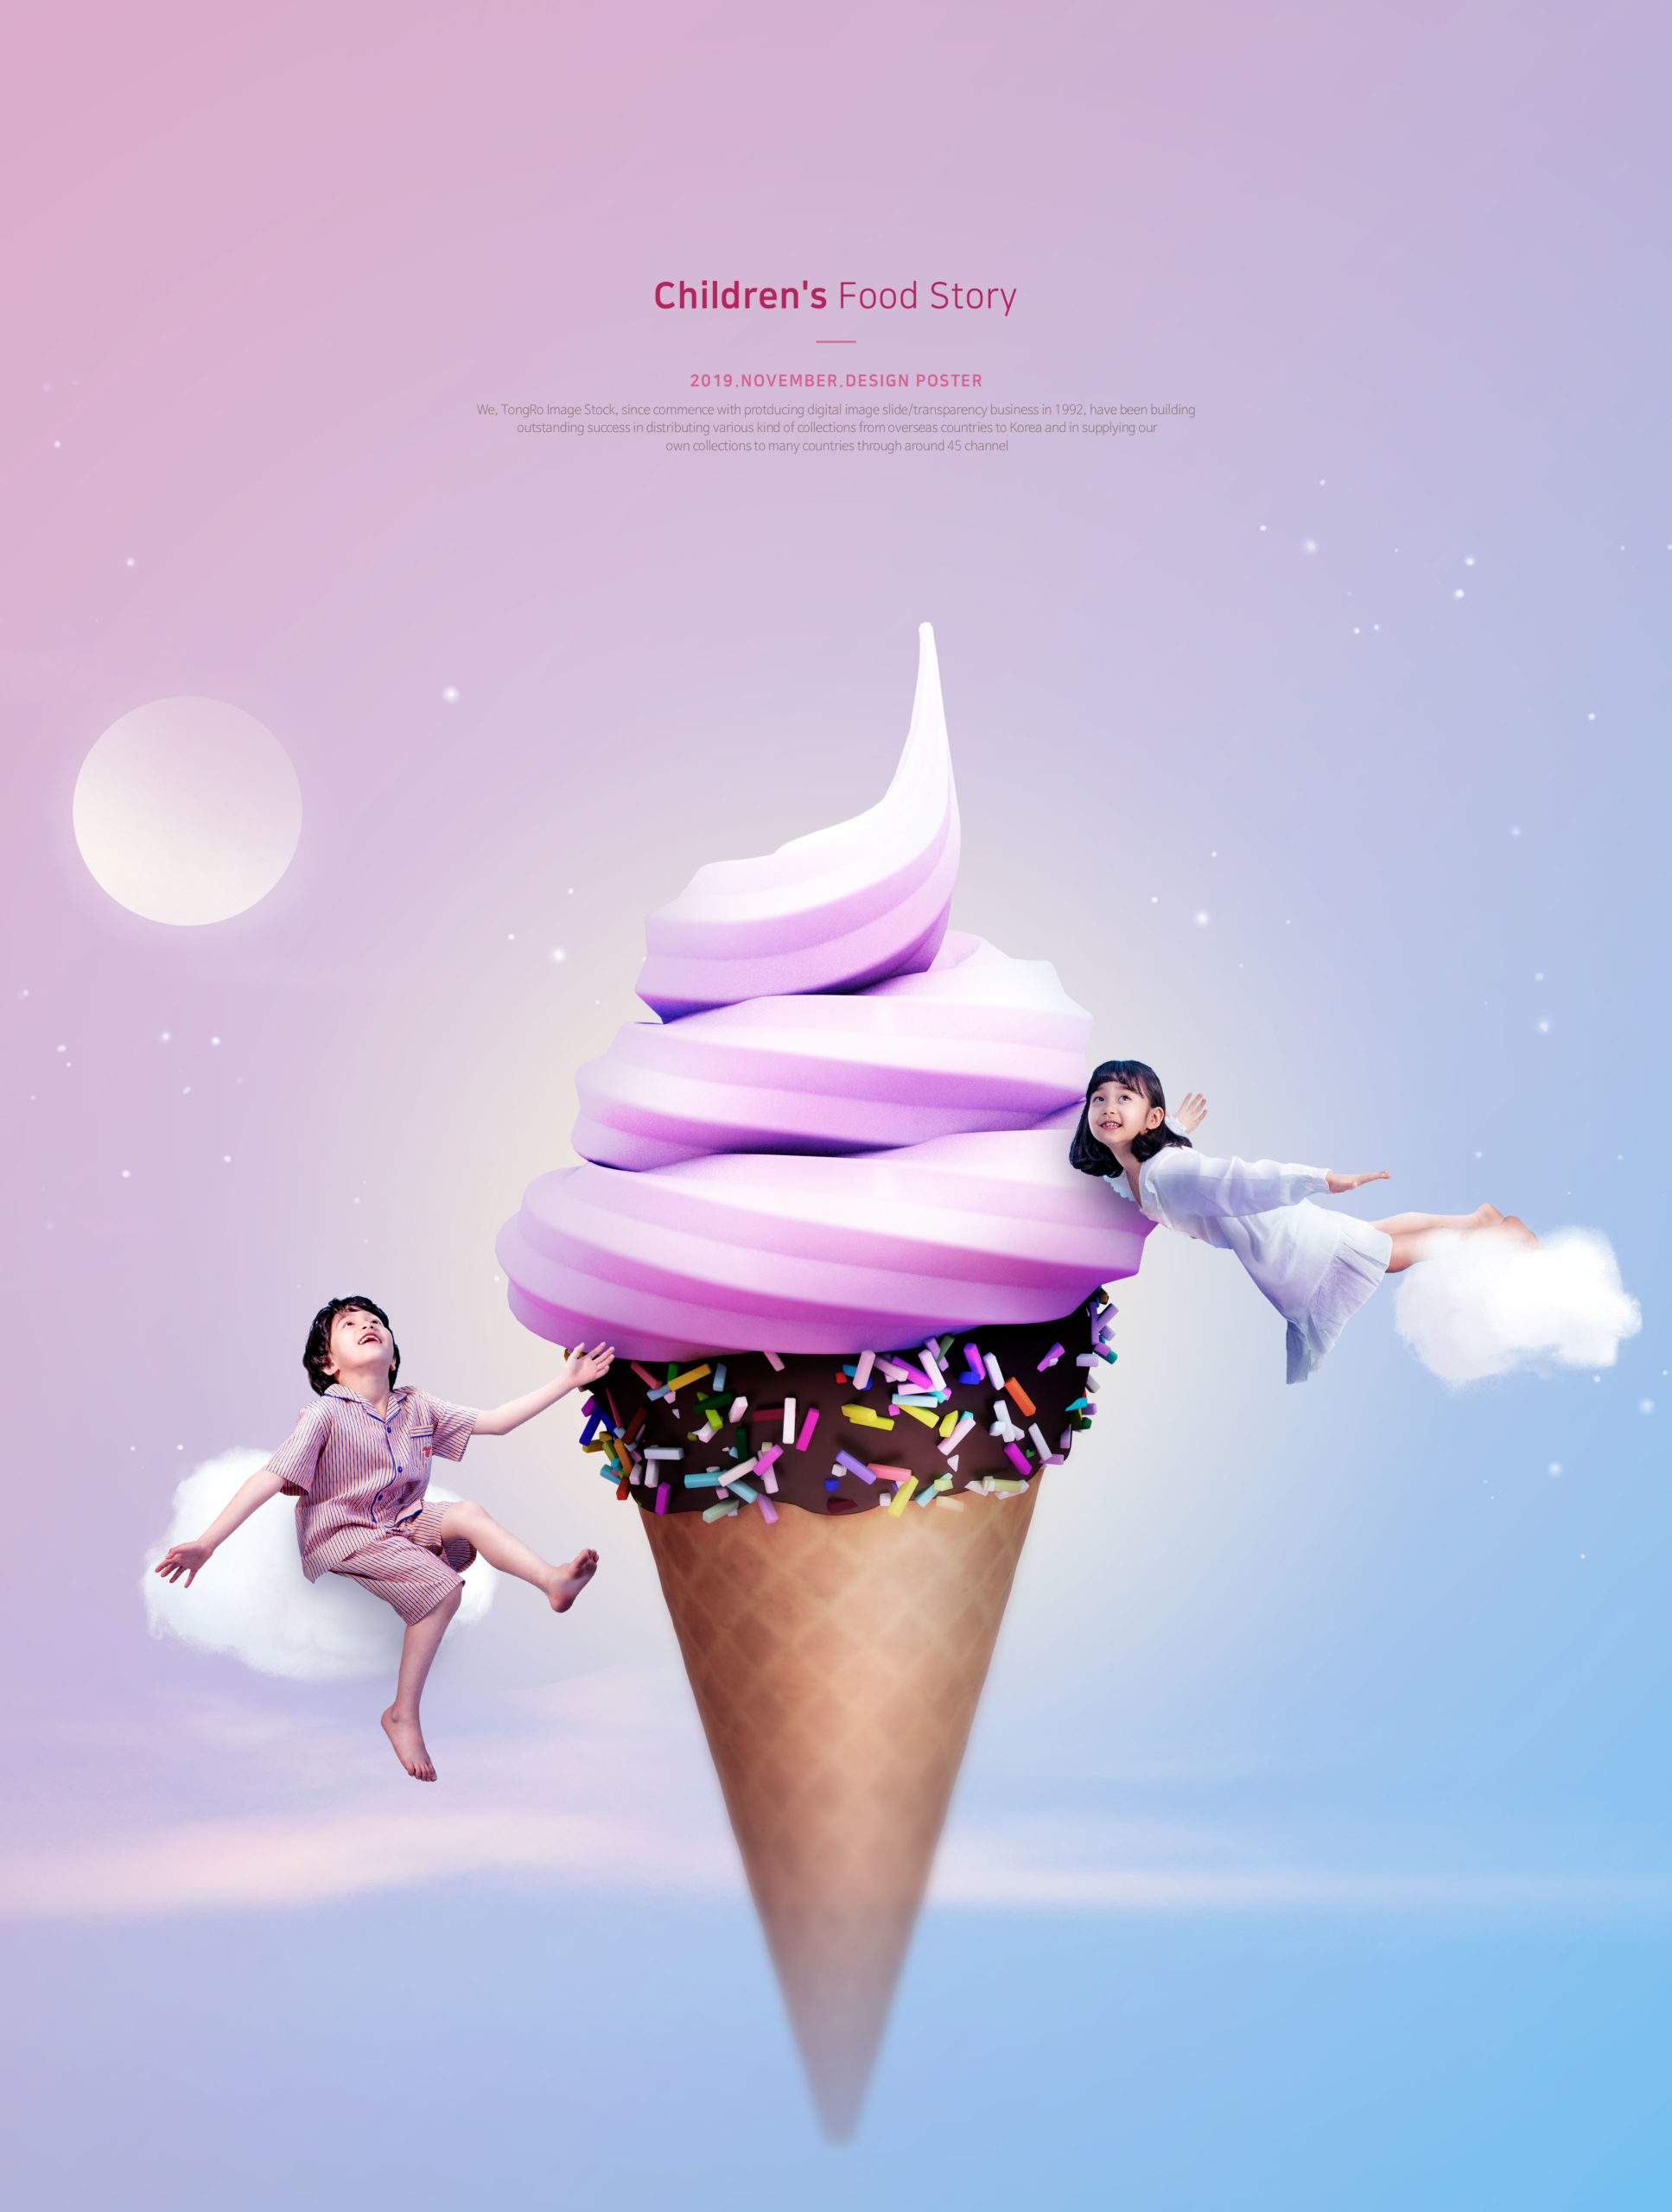 梦幻冰淇淋儿童主题海报PSD素材16图库精选[PSD]插图